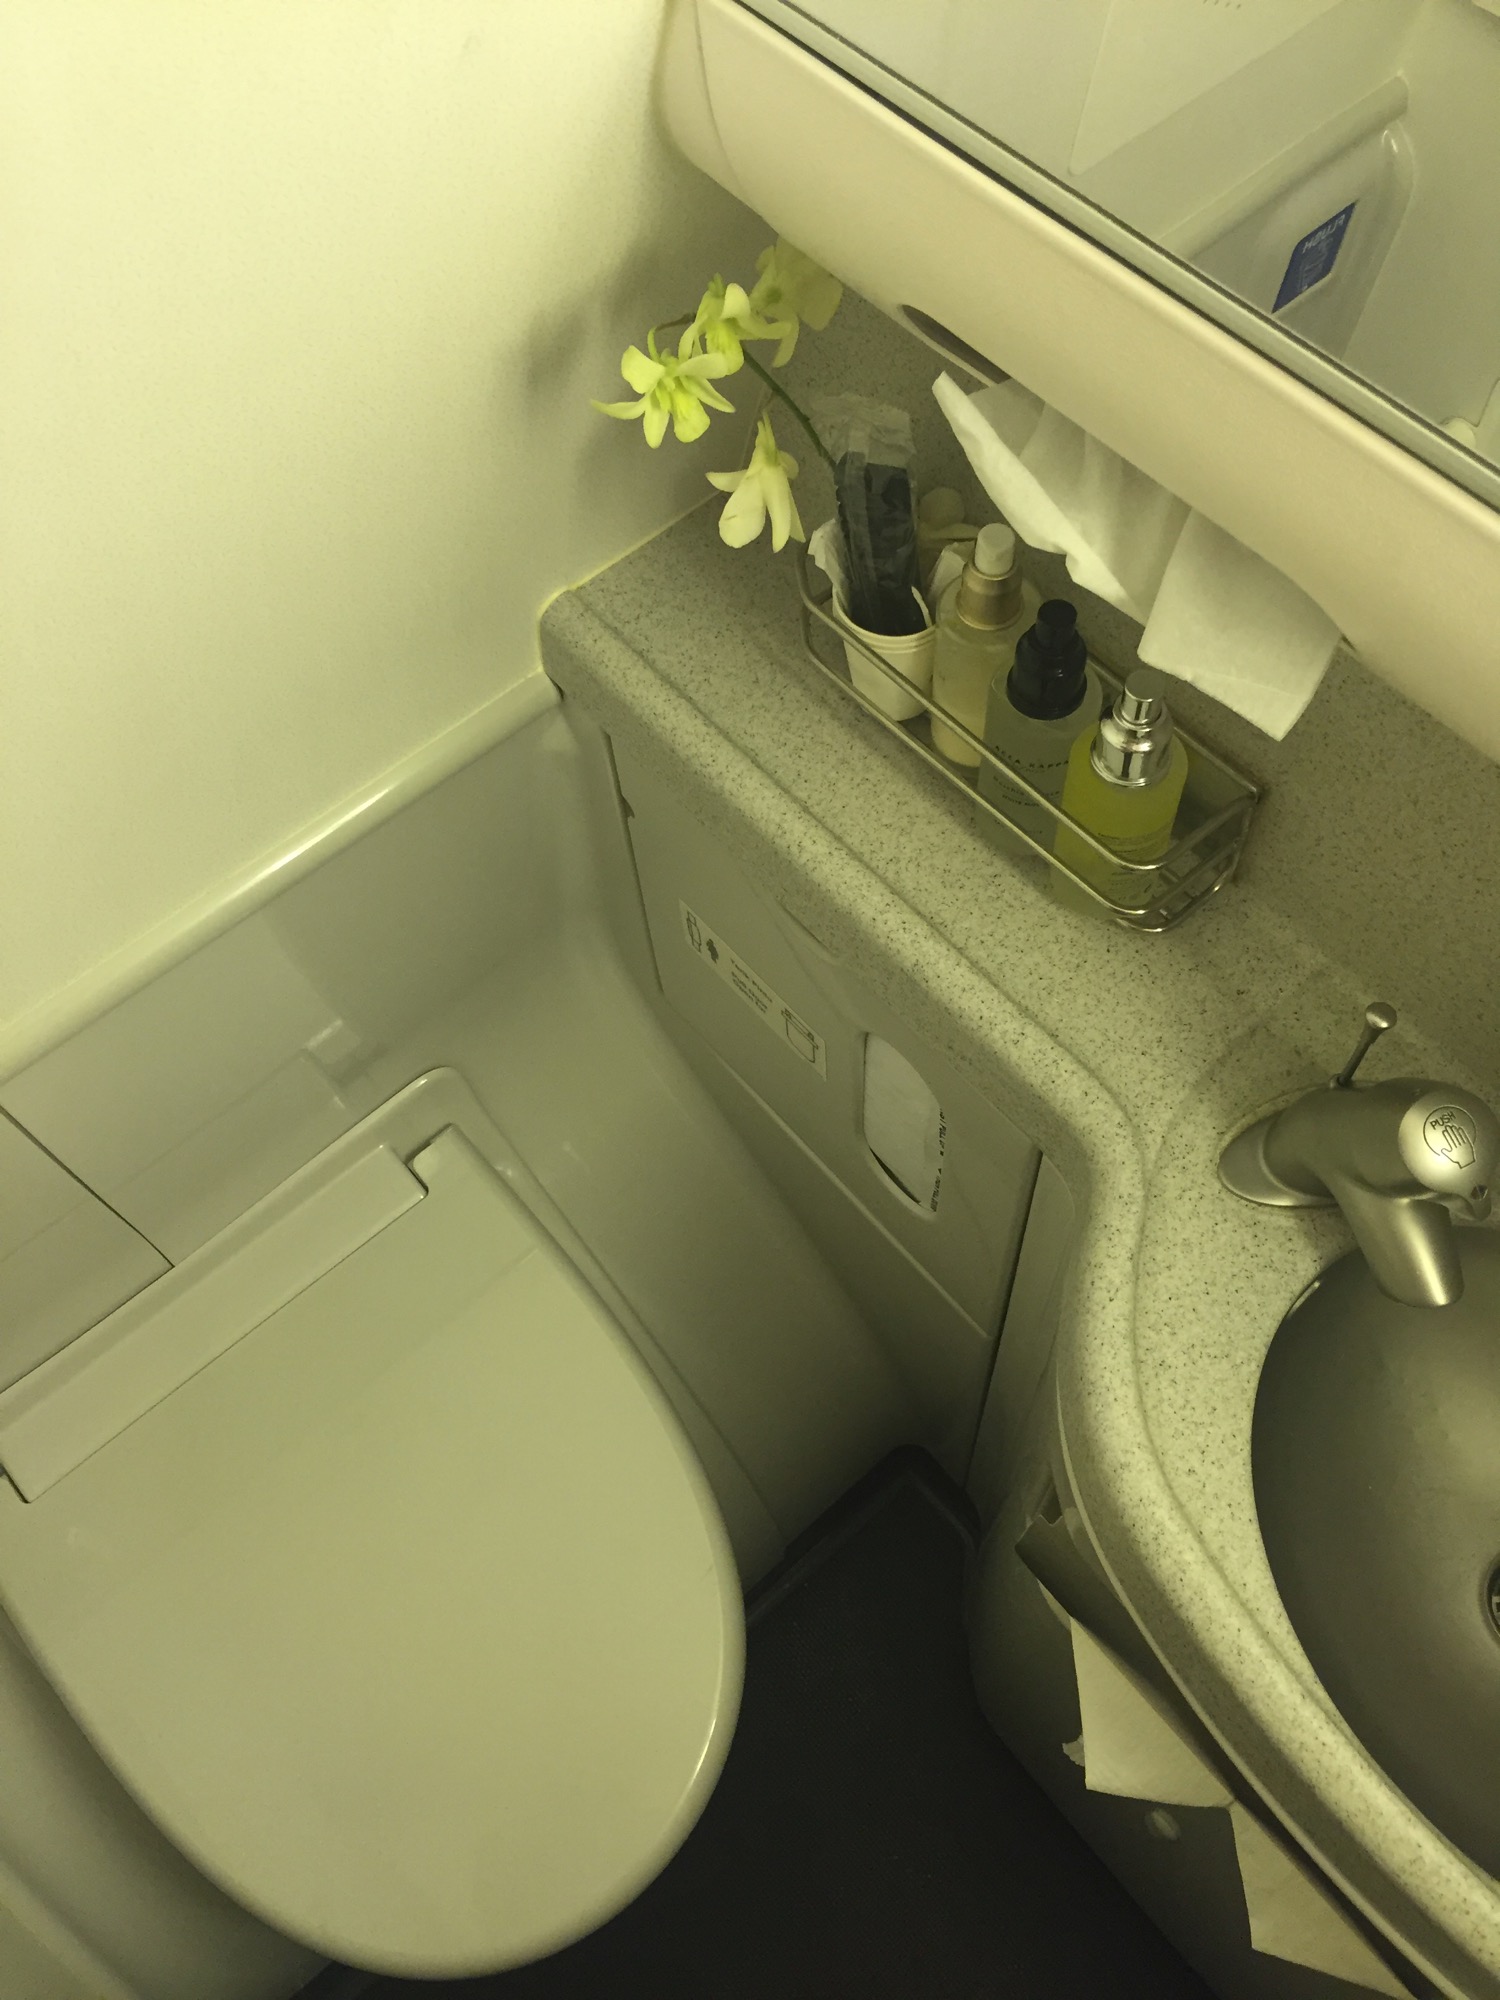 水槽和厕所，角落里有一朵花